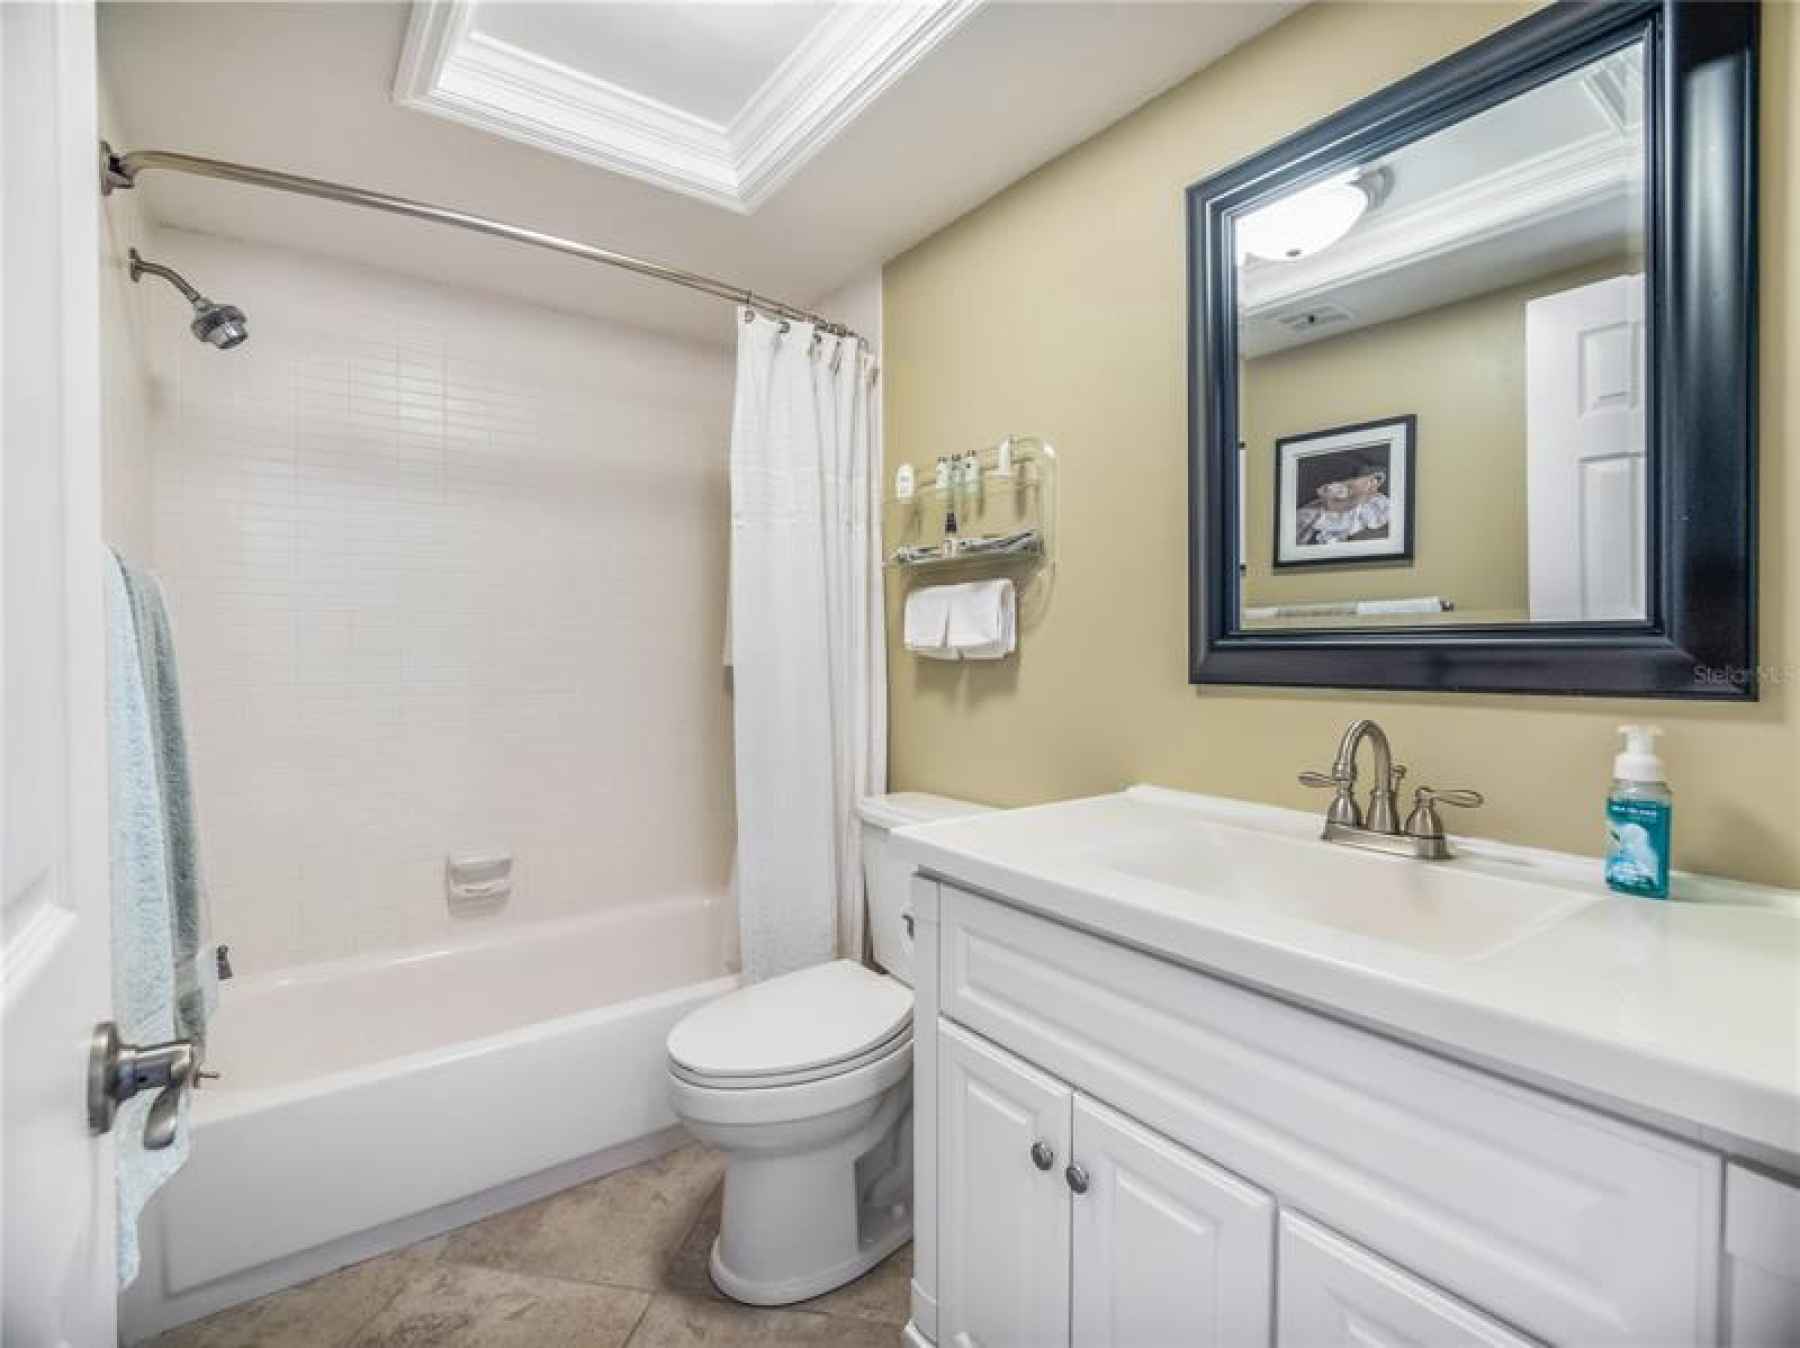 updated Guest bathroom - Soaking Bath Tub.